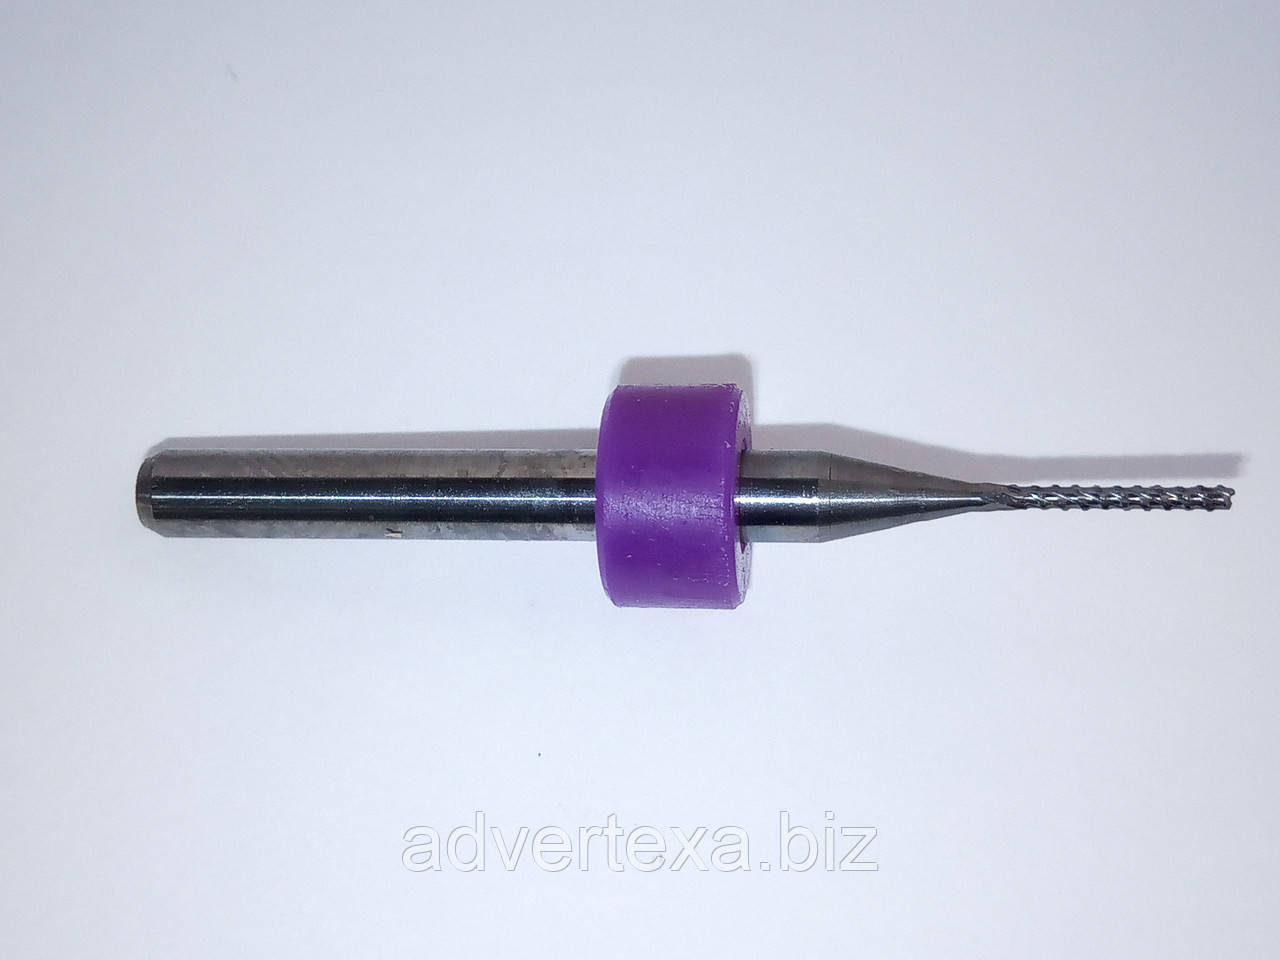 Фреза 0.9 мм 3.175 мм з вольфрамової сталі з загальною довжиною 36 мм для гравіювання на ЧПУ верстатах CNC